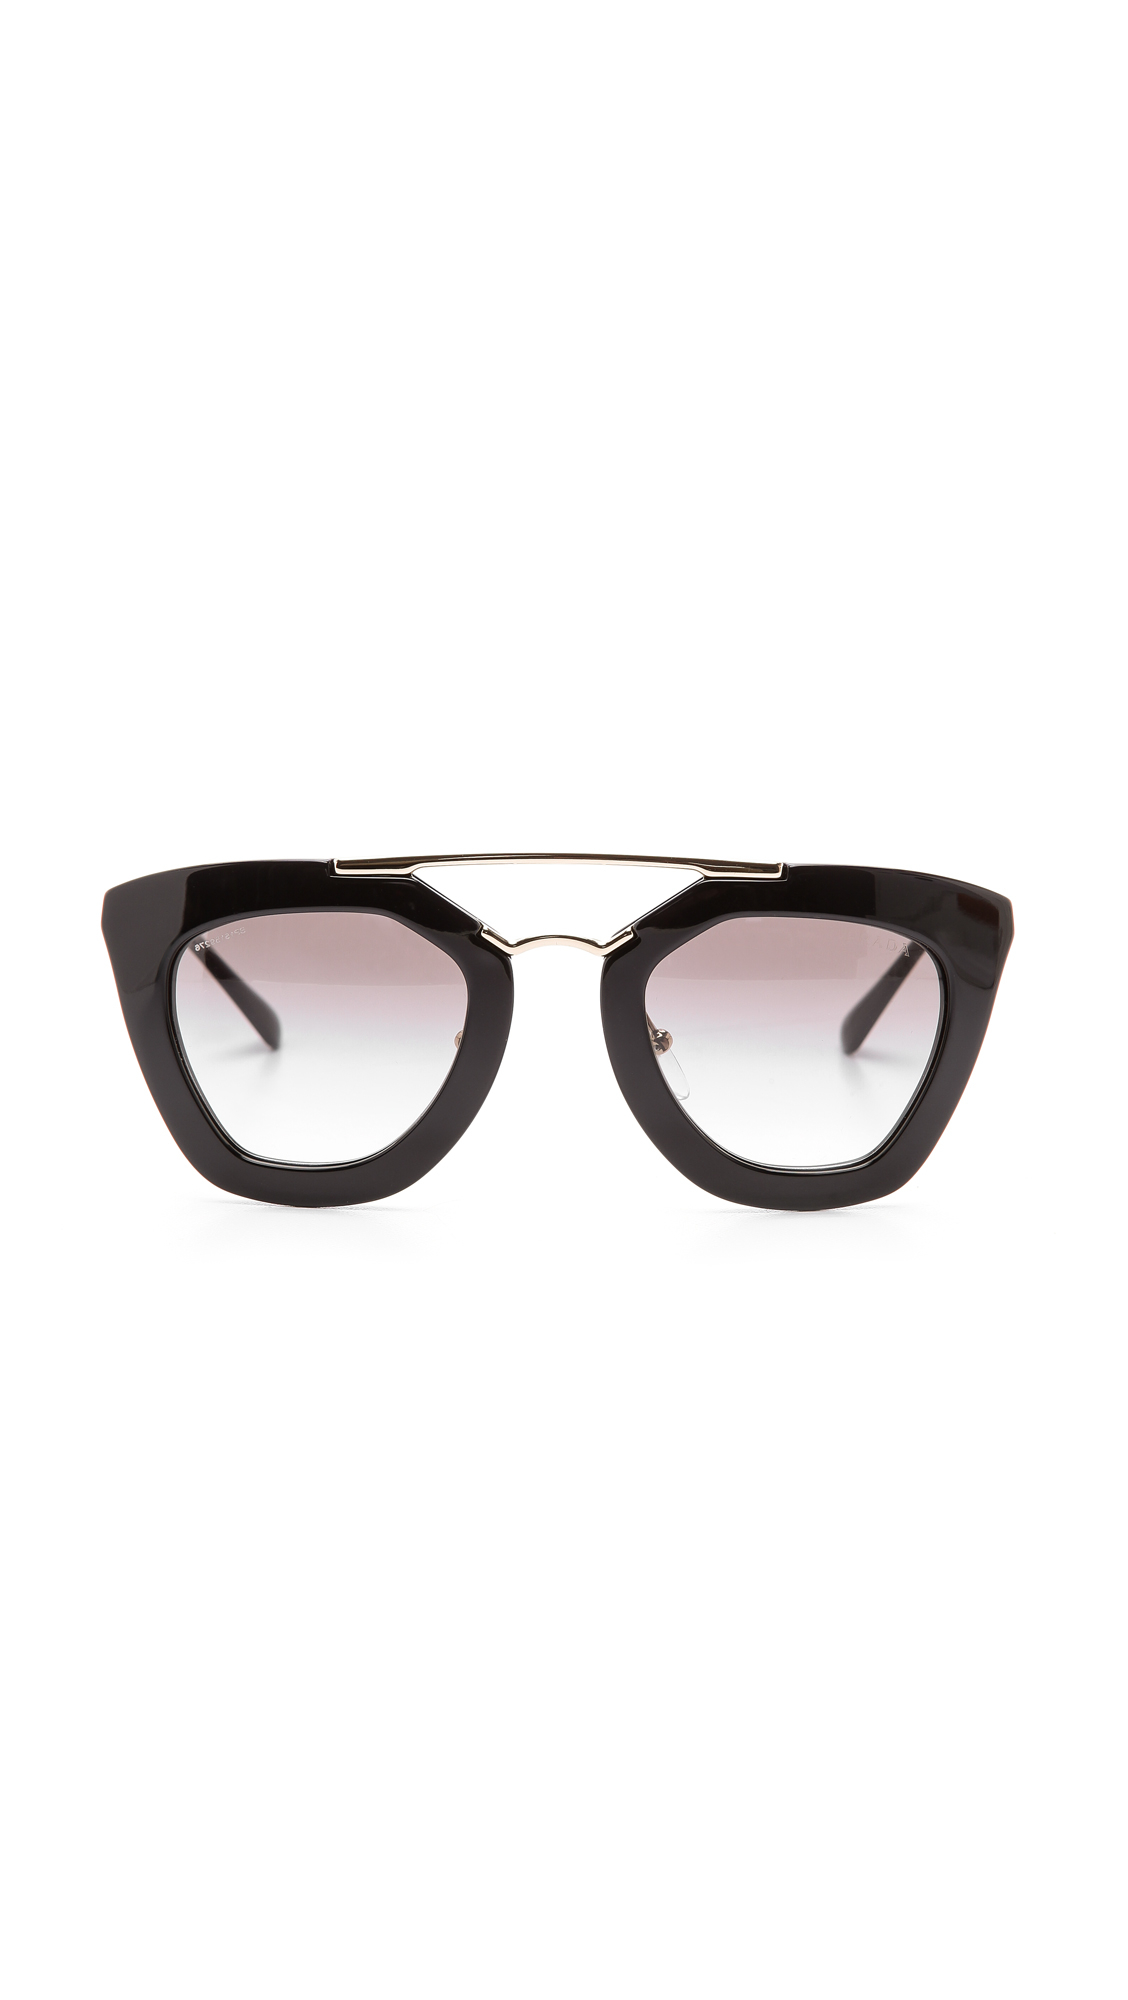 prada thick frame sunglasses